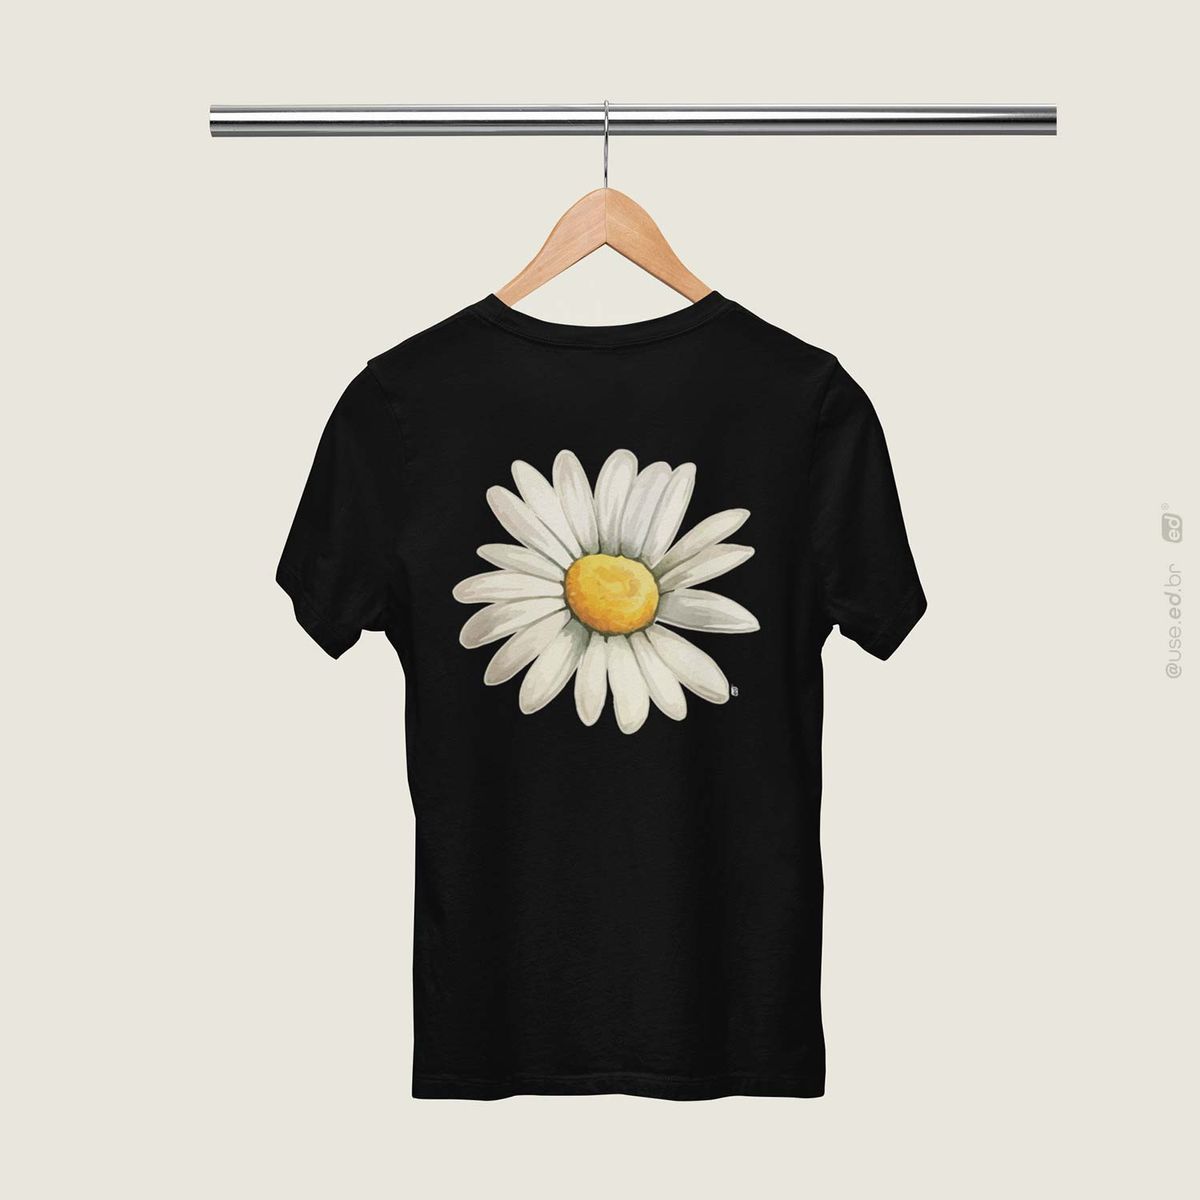 Nome do produto: Bem me Quer - Camiseta Estampa Floral Bem me Quer Preta